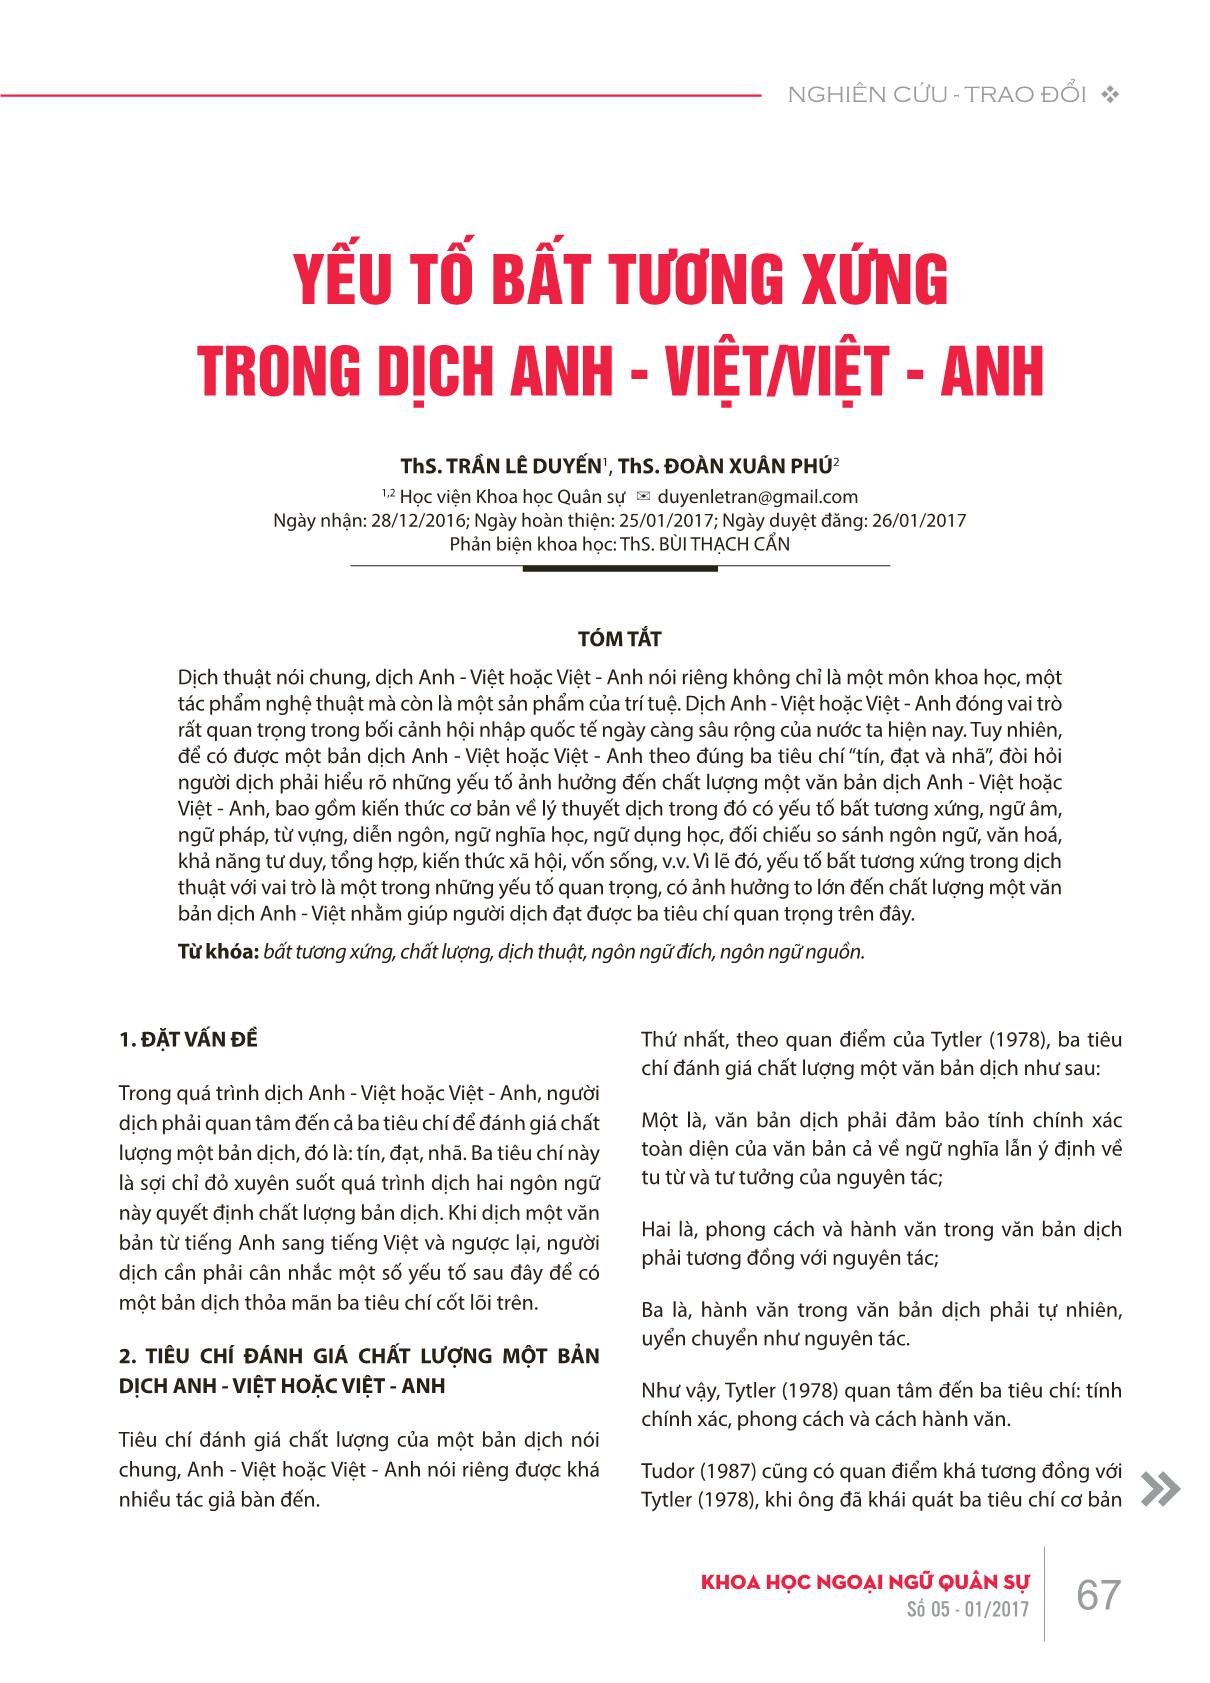 Yếu tố bất tương xứng trong dịch Anh-Việt/Việt-Anh trang 1